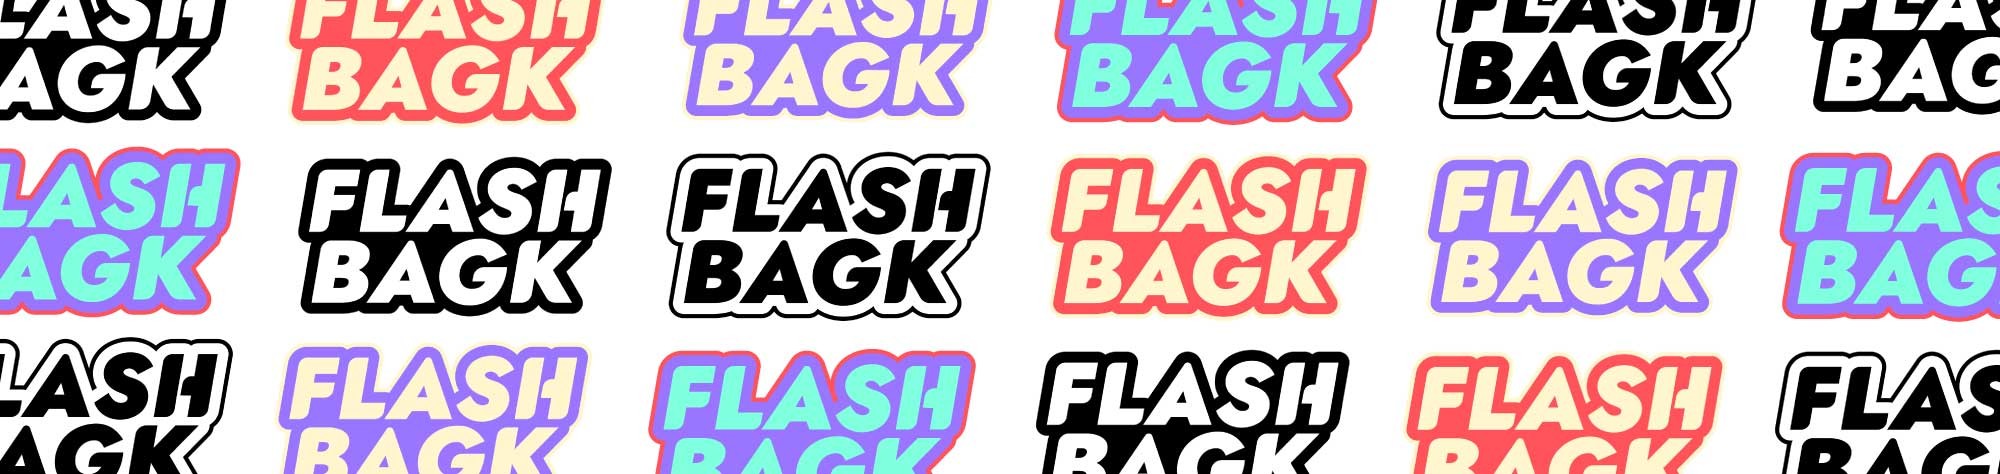 Plusieurs rangées de logo de l'entreprise Flash Bagk déclinés avec différentes couleurs, réalisé par ÈS.B Studio.